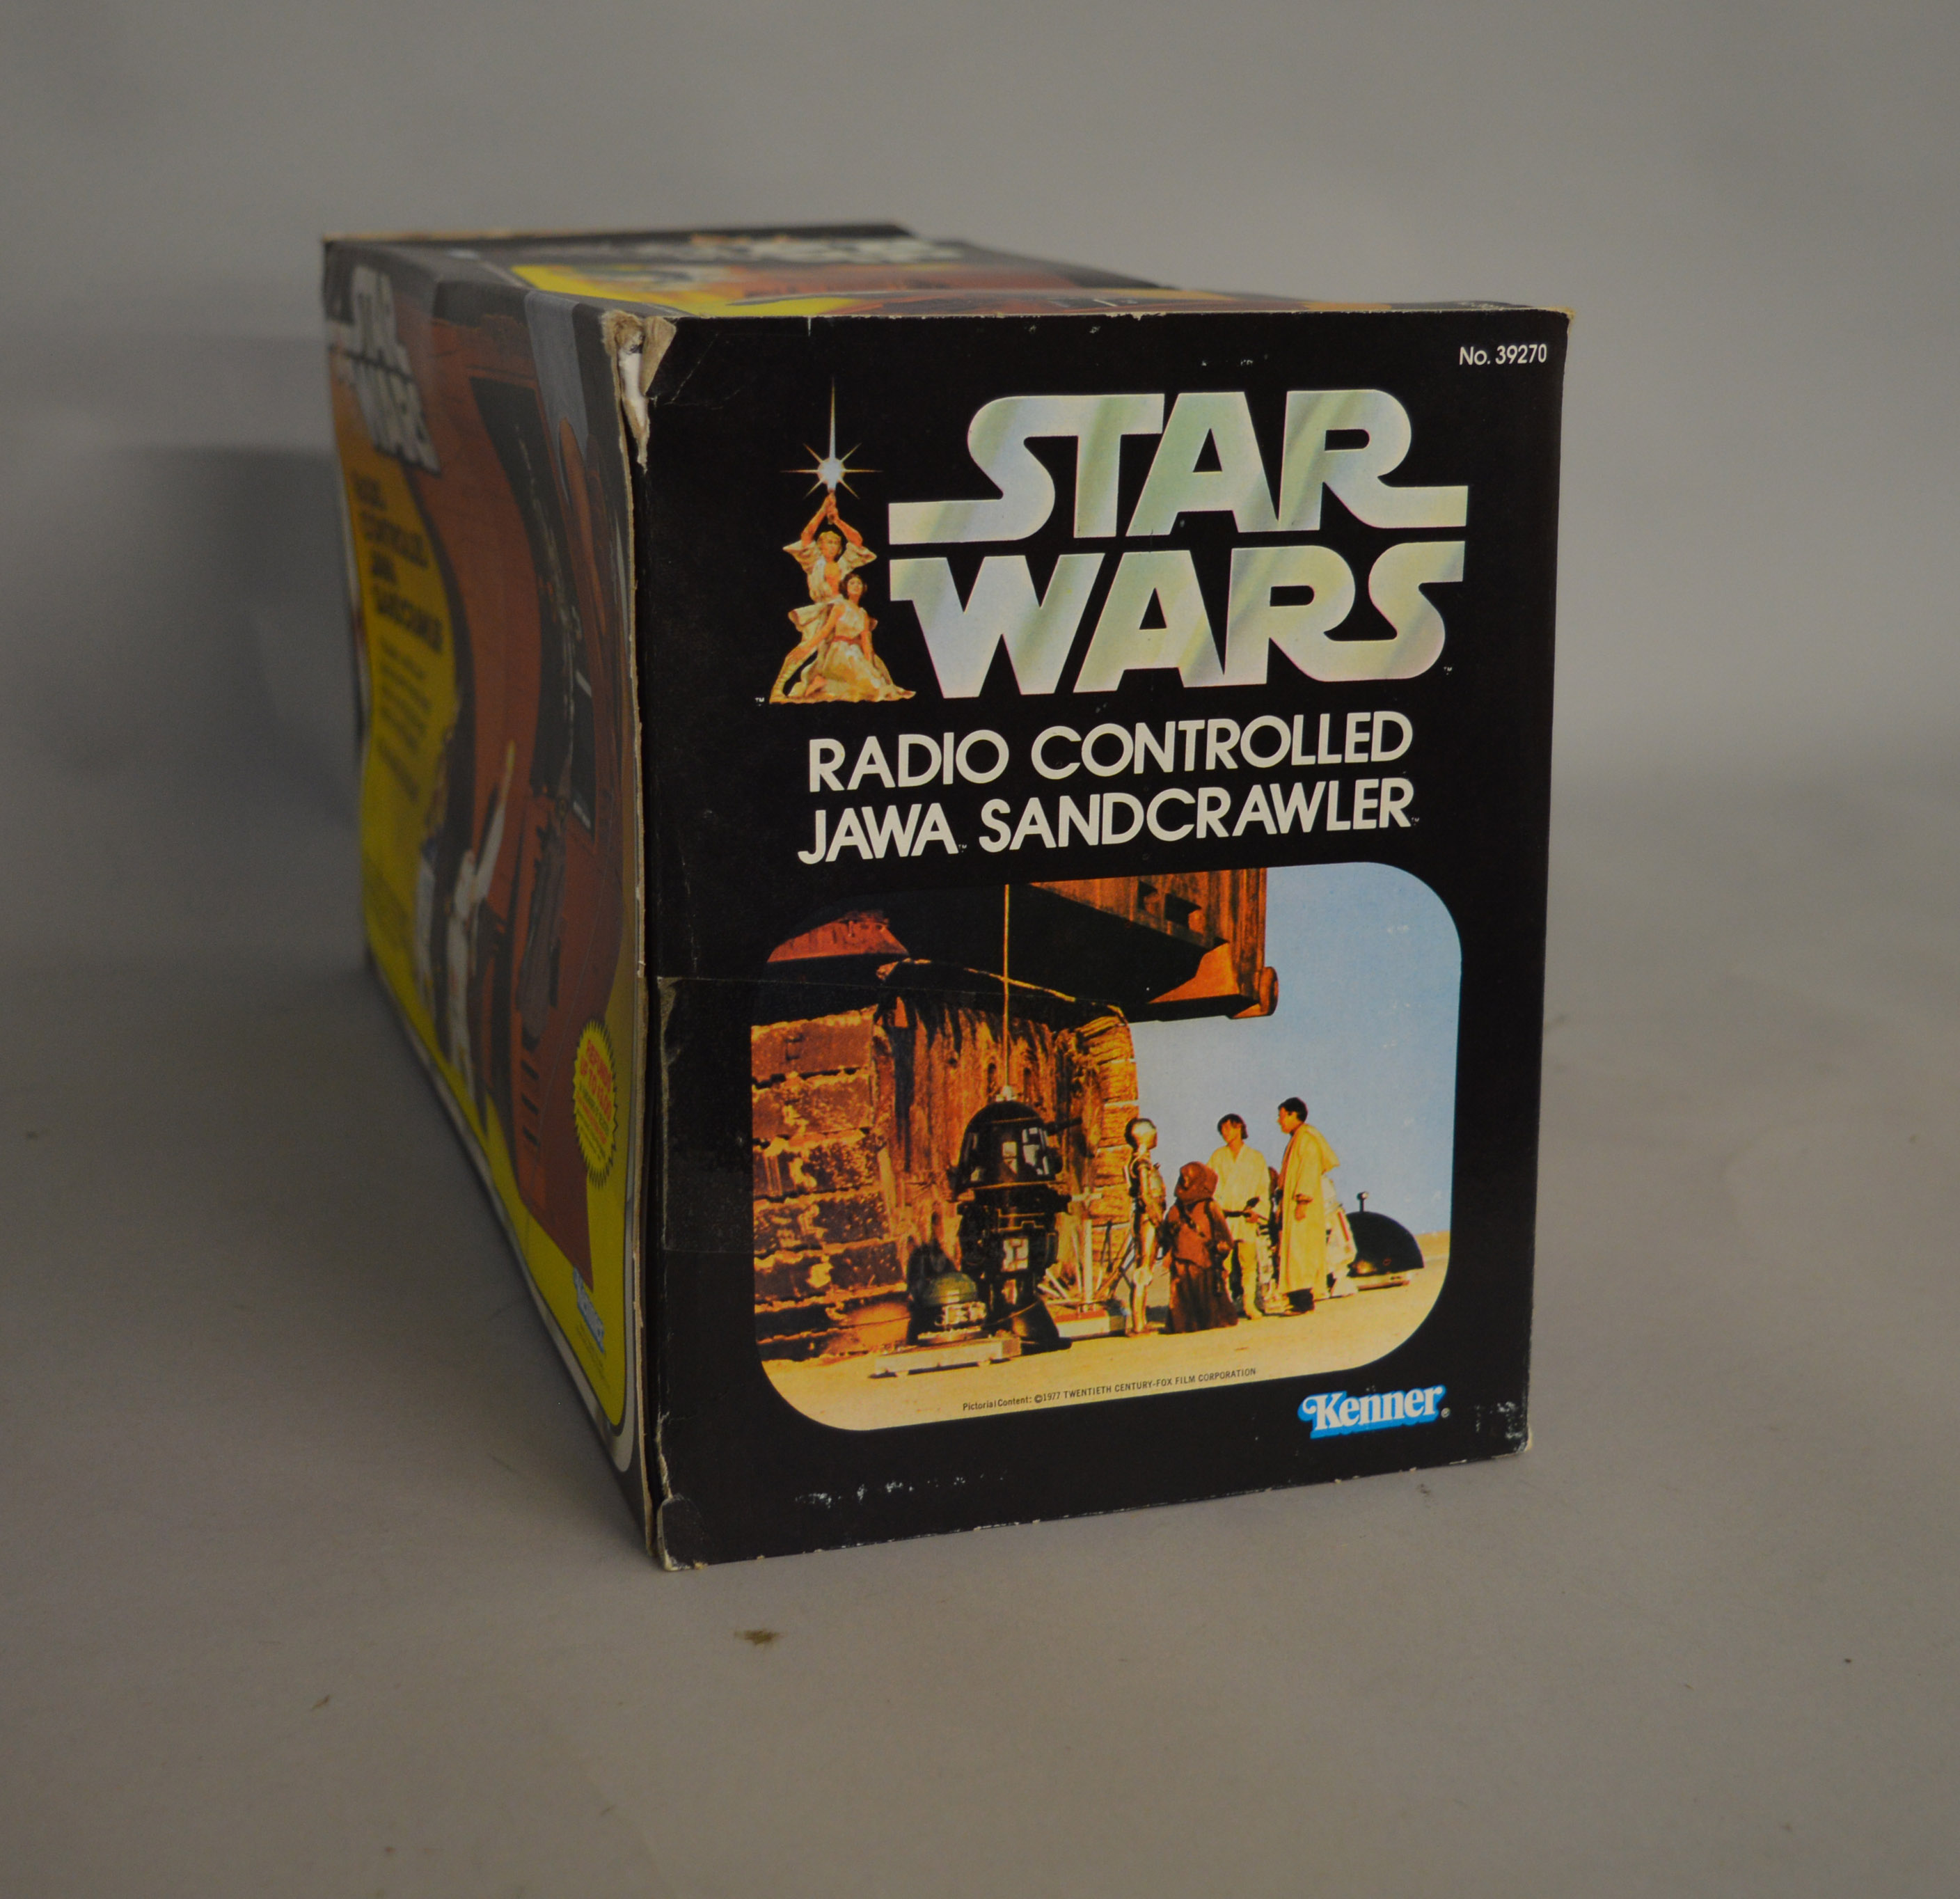 Kenner Star Wars 39270 Radio Controlled Jawa Sandcrawler in original box. - Image 6 of 8